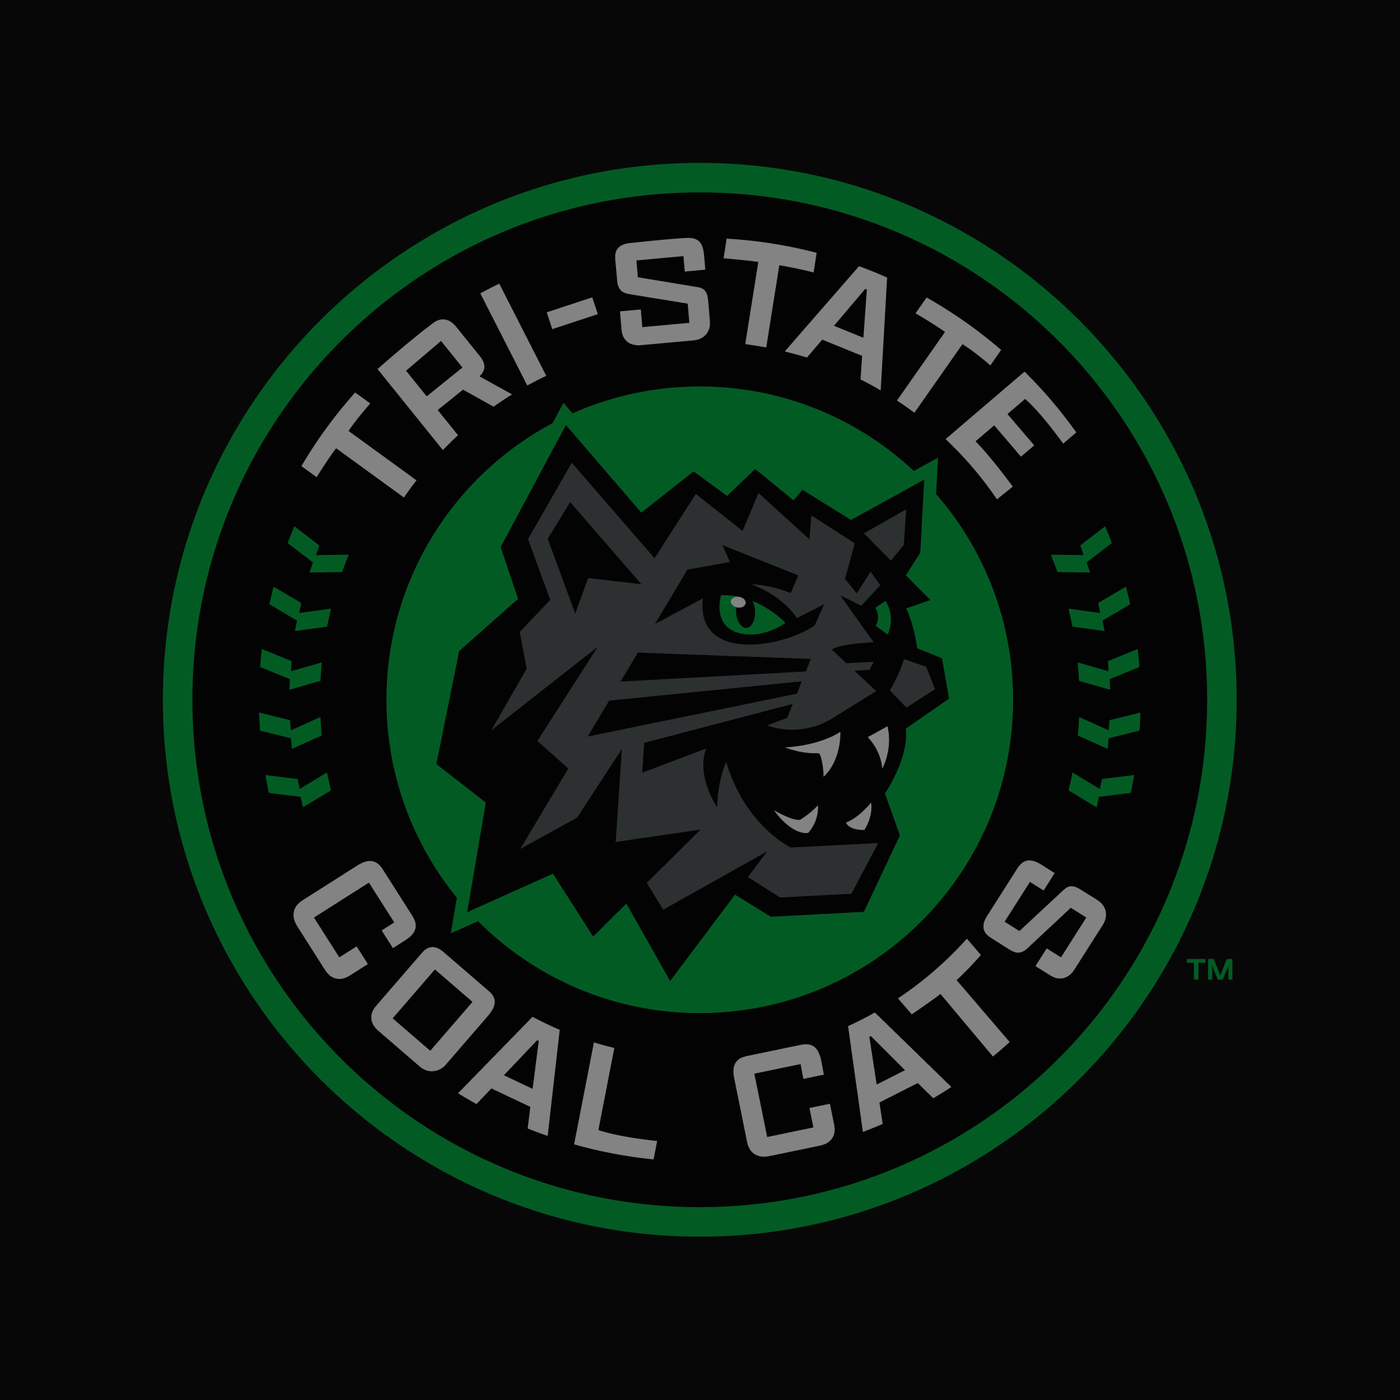 Tri-State Coal Cats